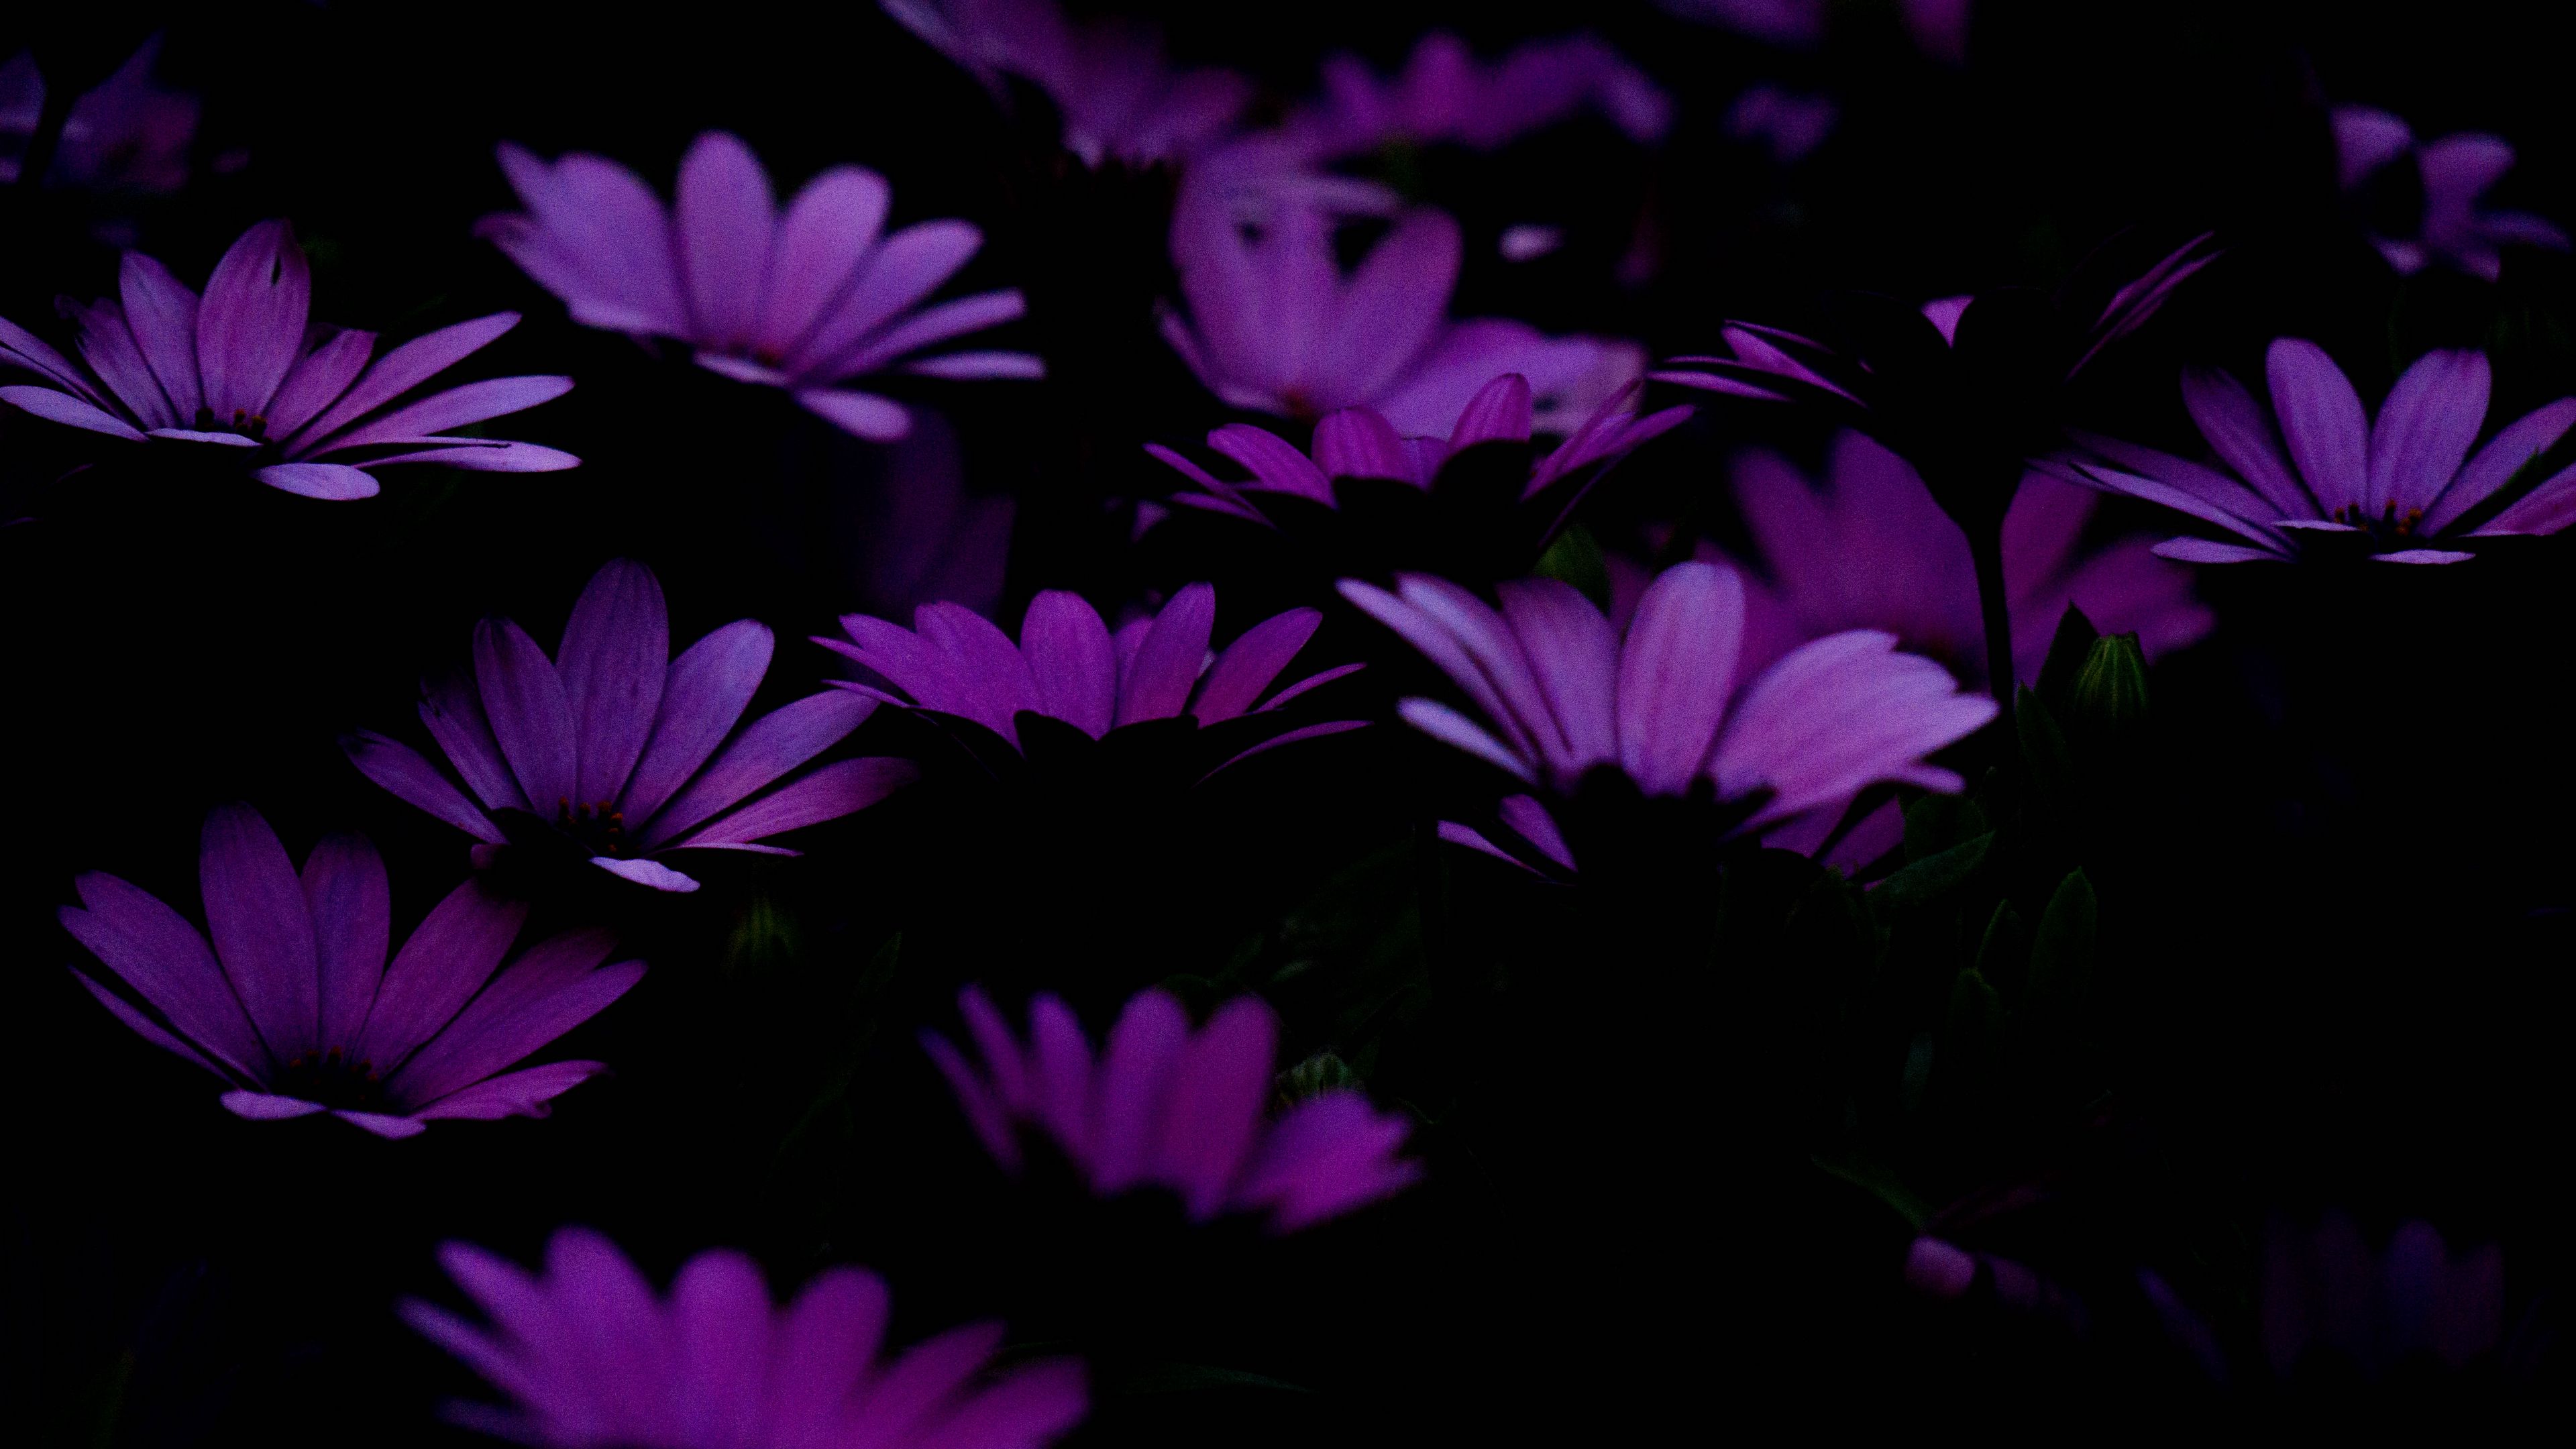 Hình nền hoa tím đậm (Dark purple flowers wallpapers): Hoa tím được xem là màu sắc của sự sang trọng, quý phái và nổi bật giữa những loại hoa khác. Bộ sưu tập hình nền hoa tím đậm của chúng tôi cho phép bạn thưởng thức tuyệt đẹp của chúng, giúp cho màn hình của bạn trở nên độc đáo và thu hút sự chú ý.